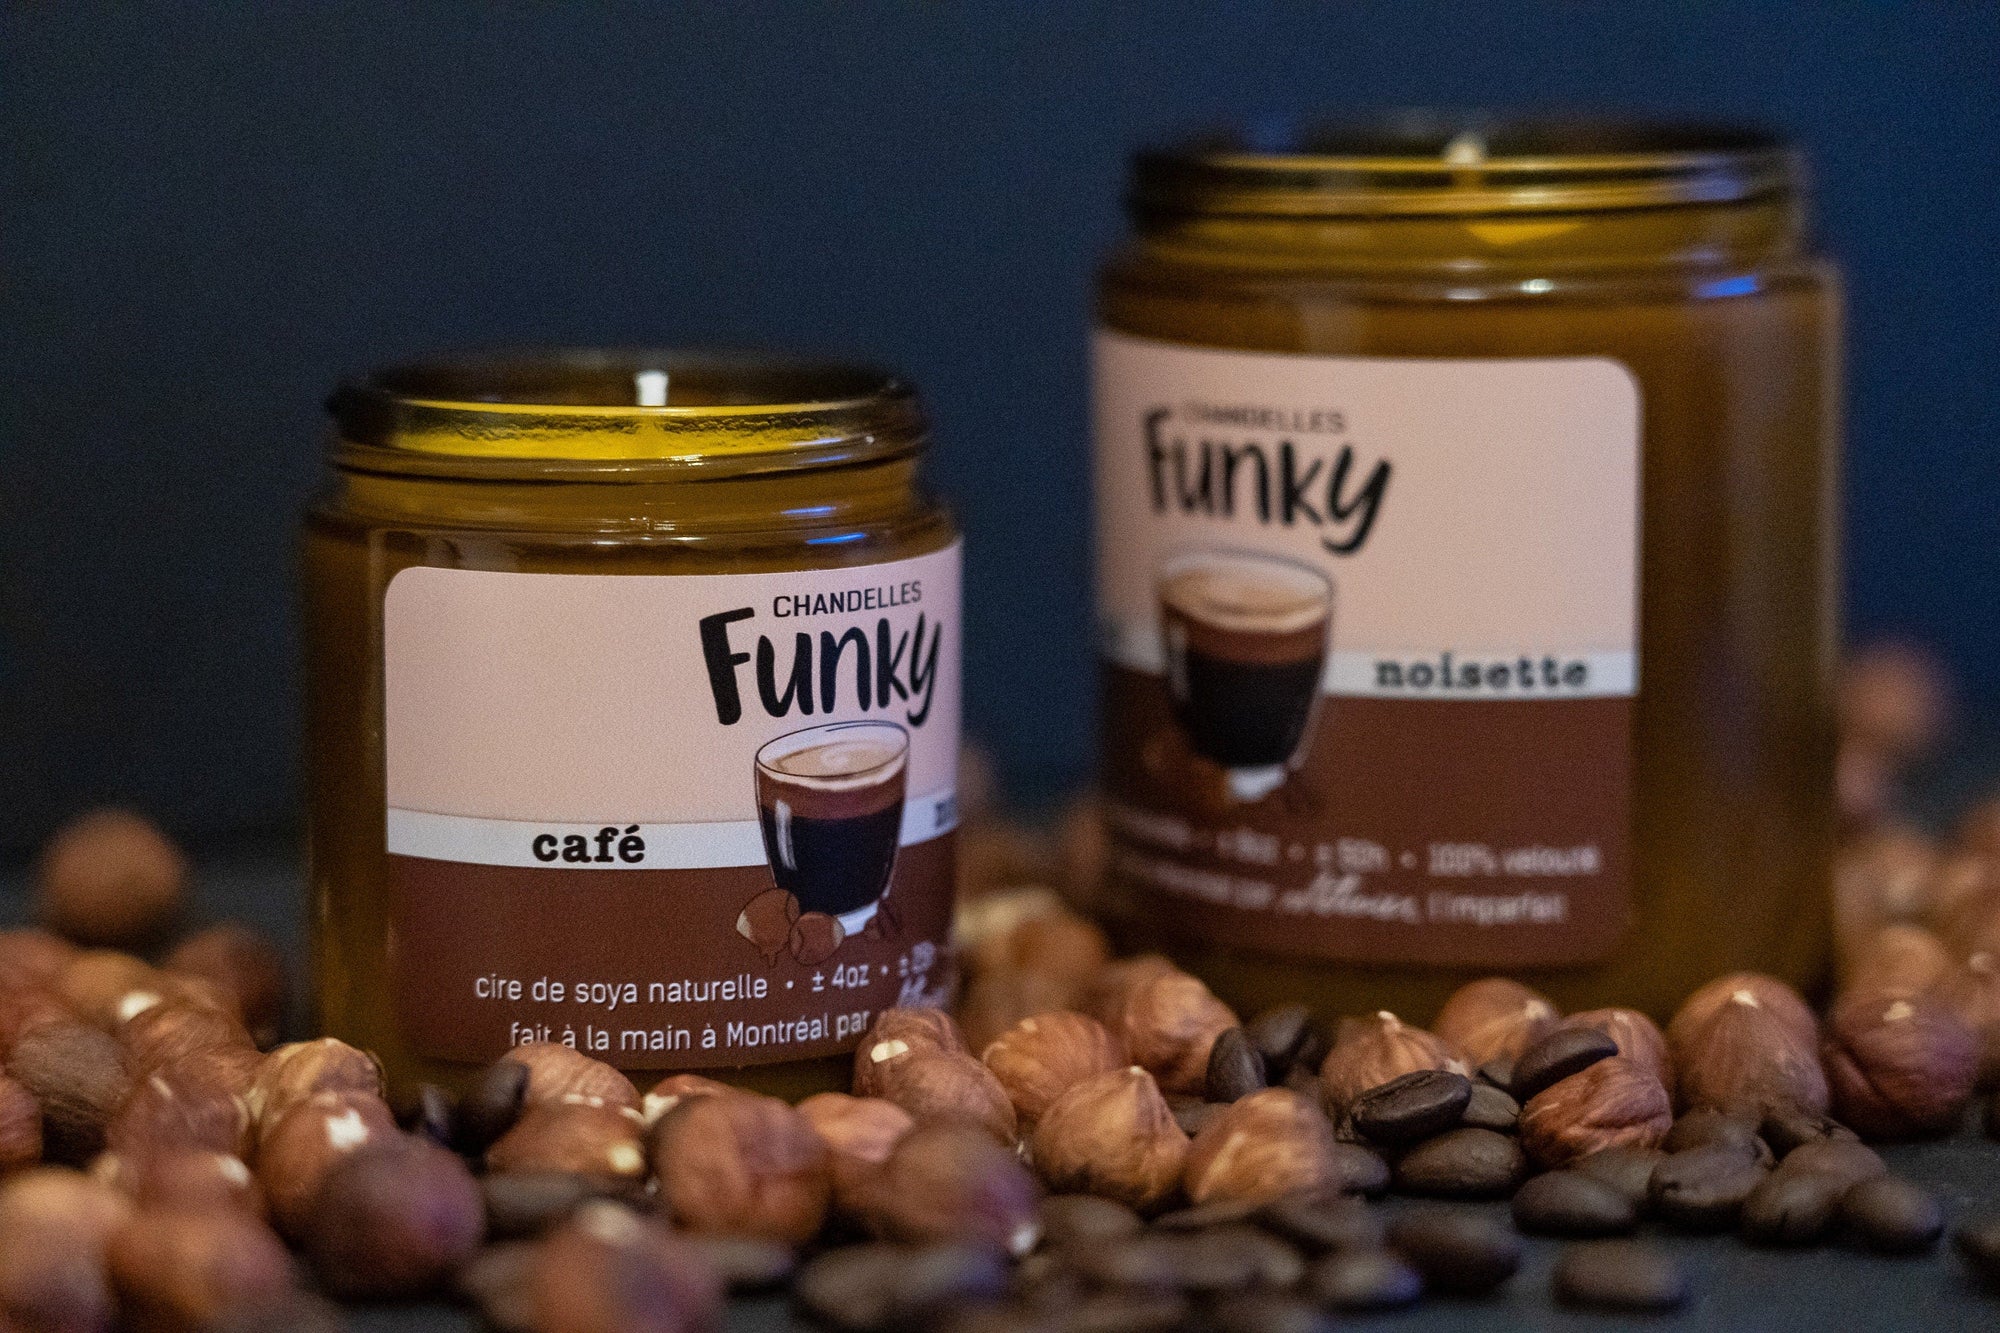 Chandelle Café noisette - Funky - Funky & Co.